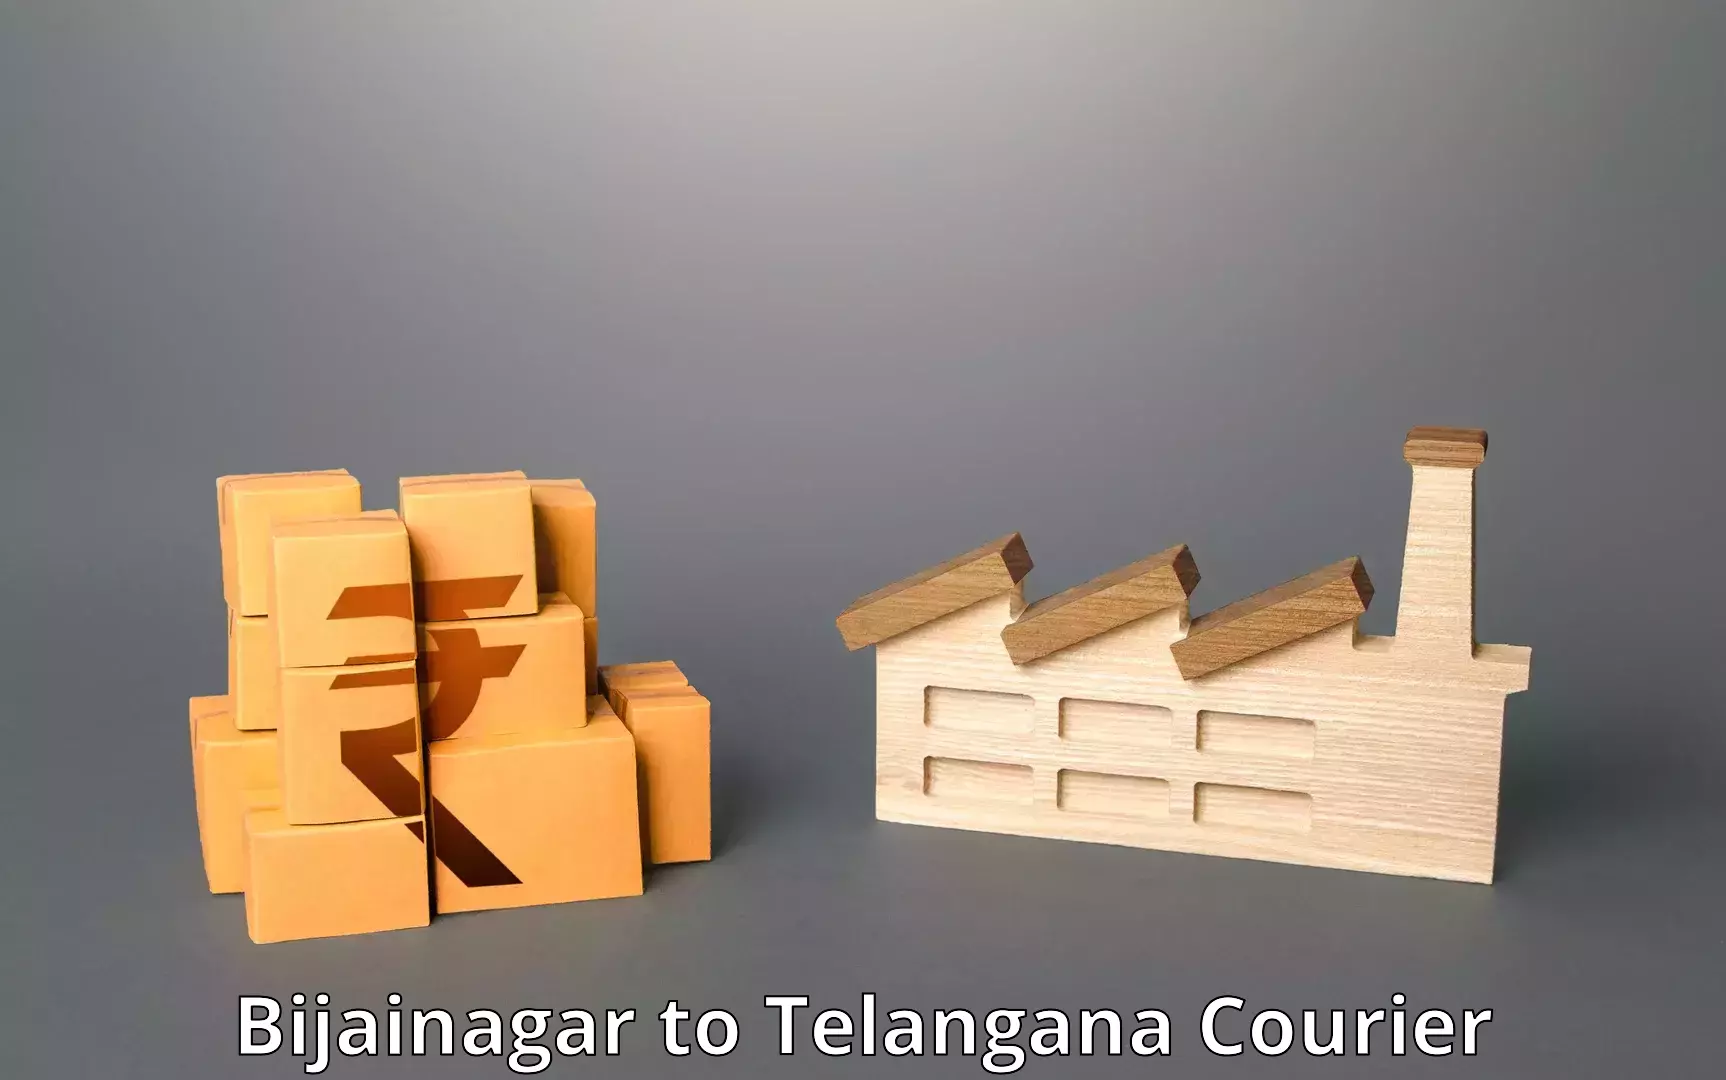 Reliable delivery network Bijainagar to Tallada